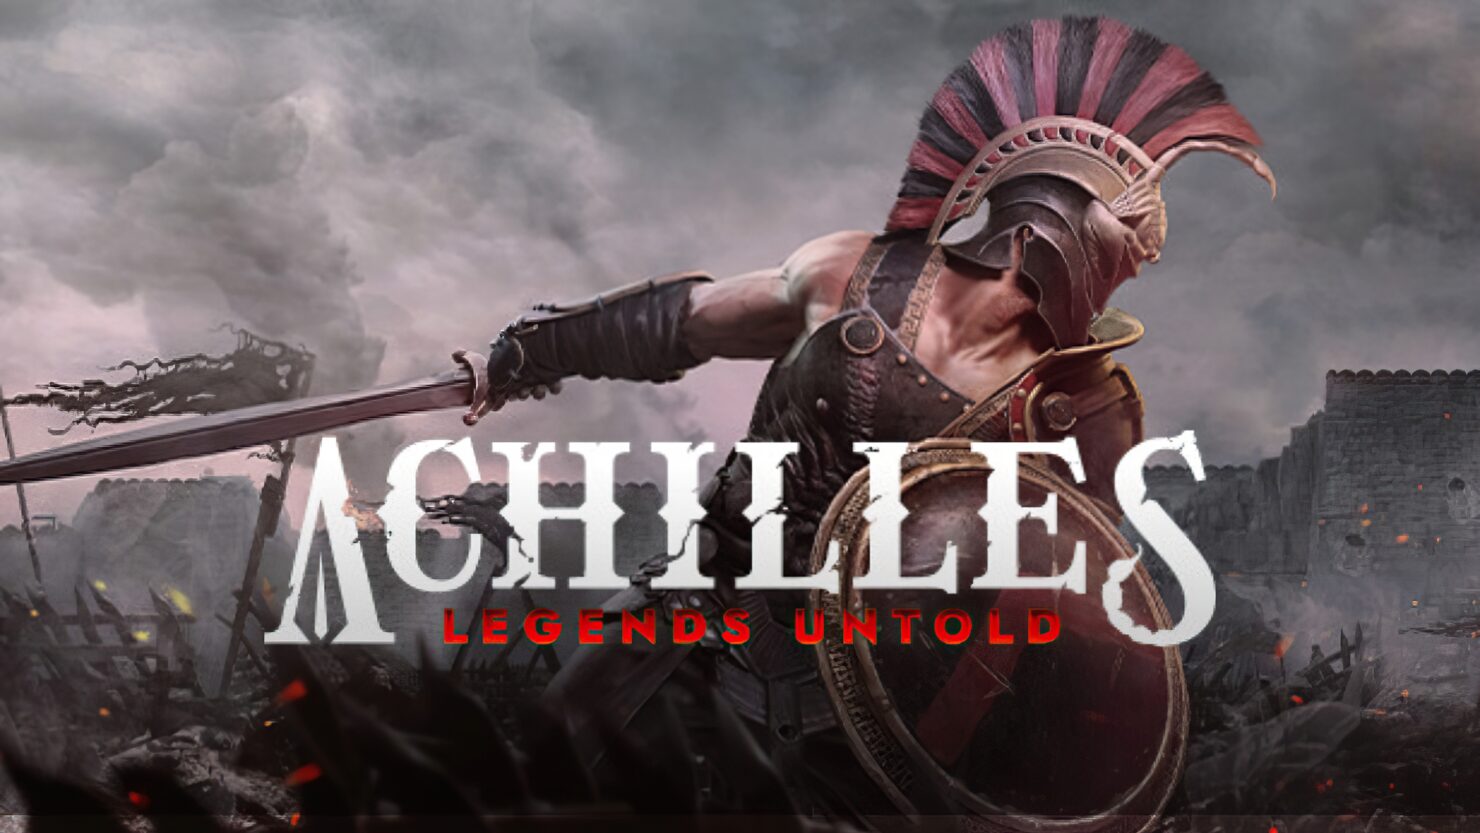 Achilles Legends Untold instal the last version for iphone